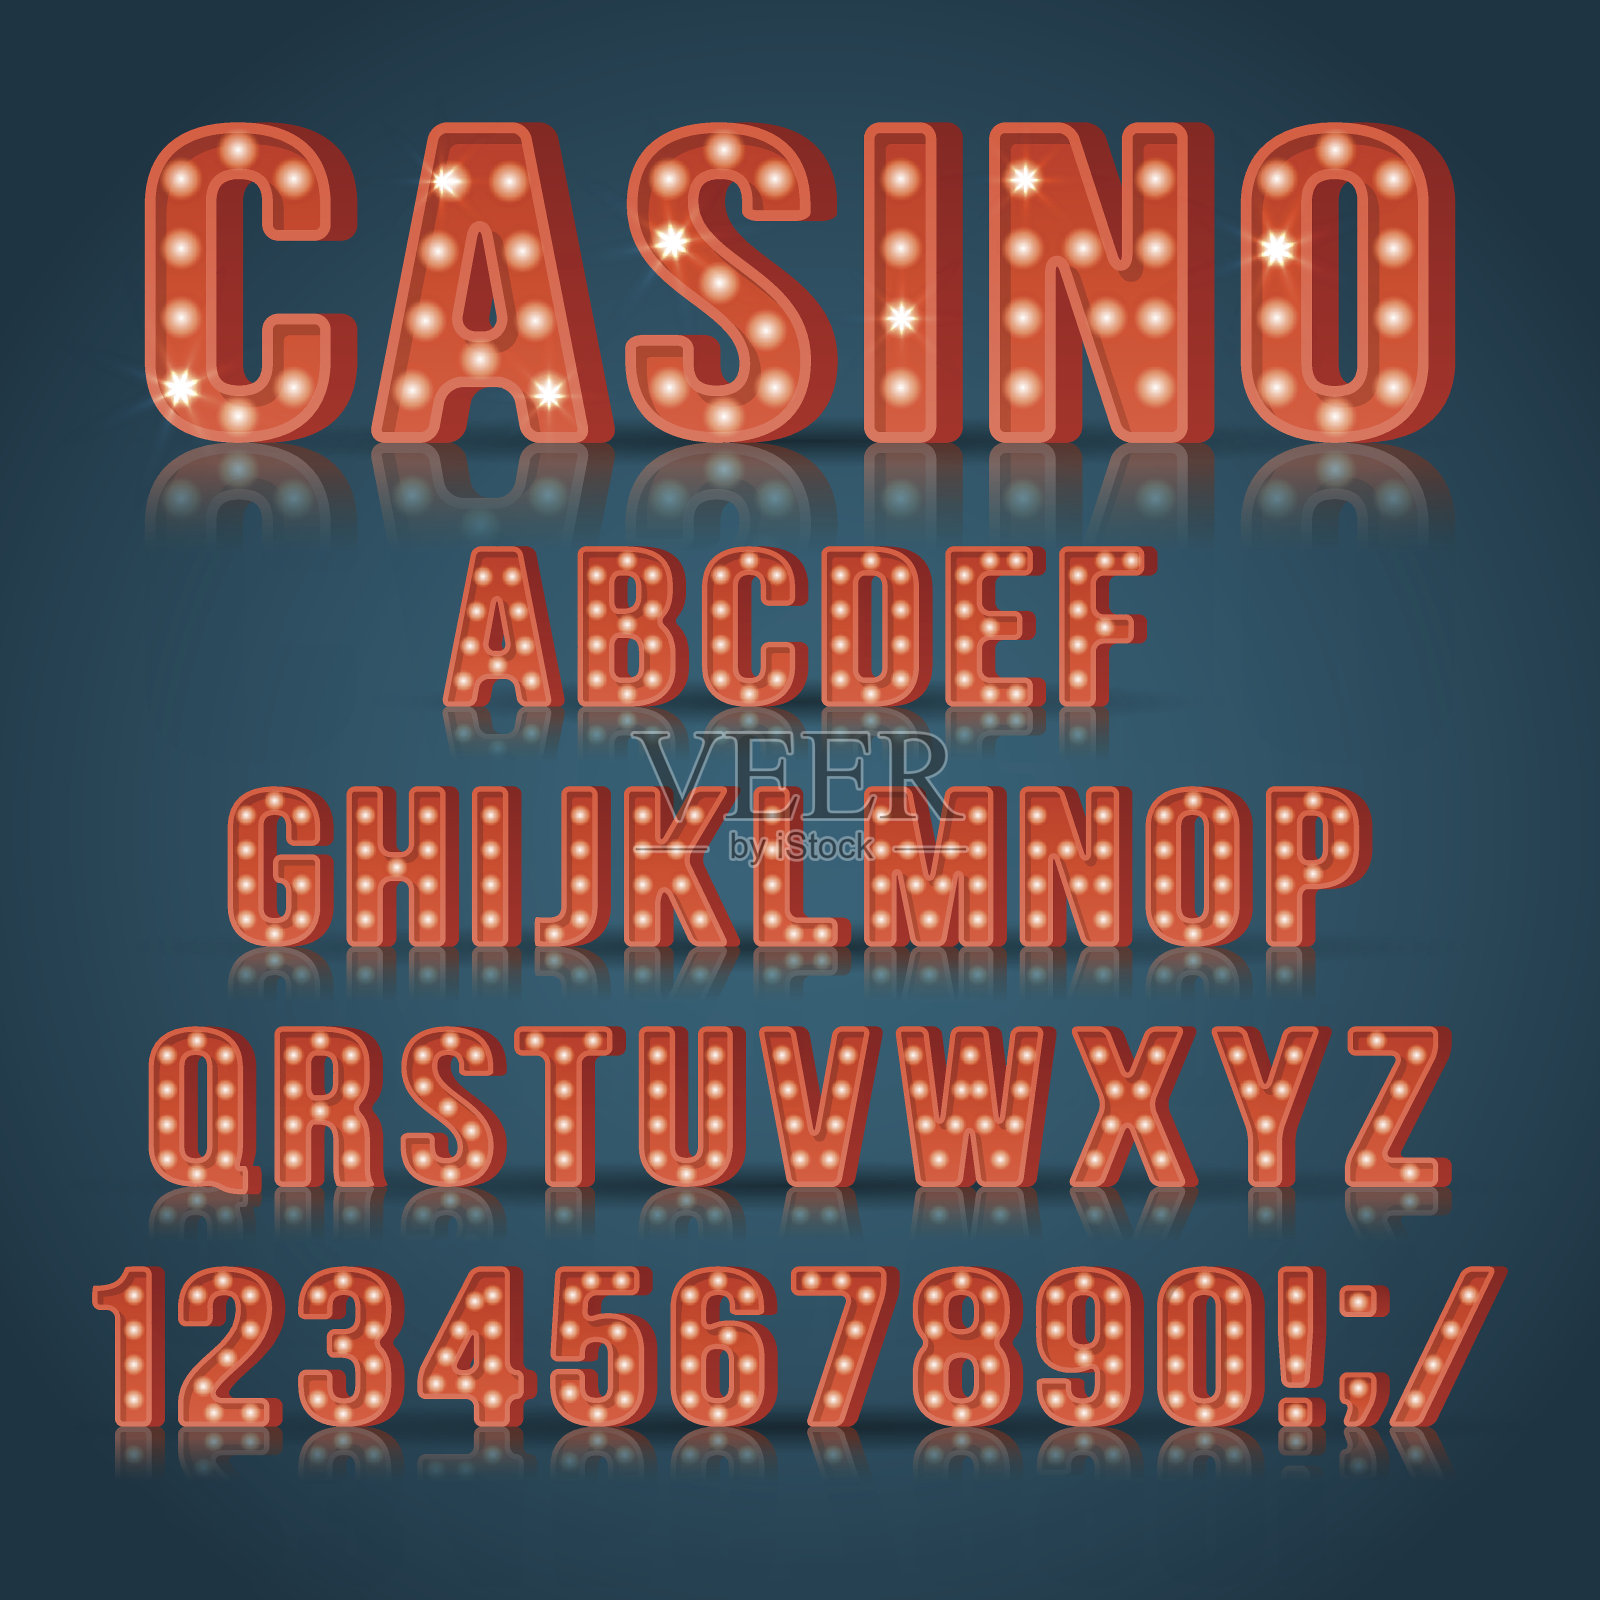 用于赌场标识设计的复古灯泡字母和数字。现实主义者矢量图设计元素图片